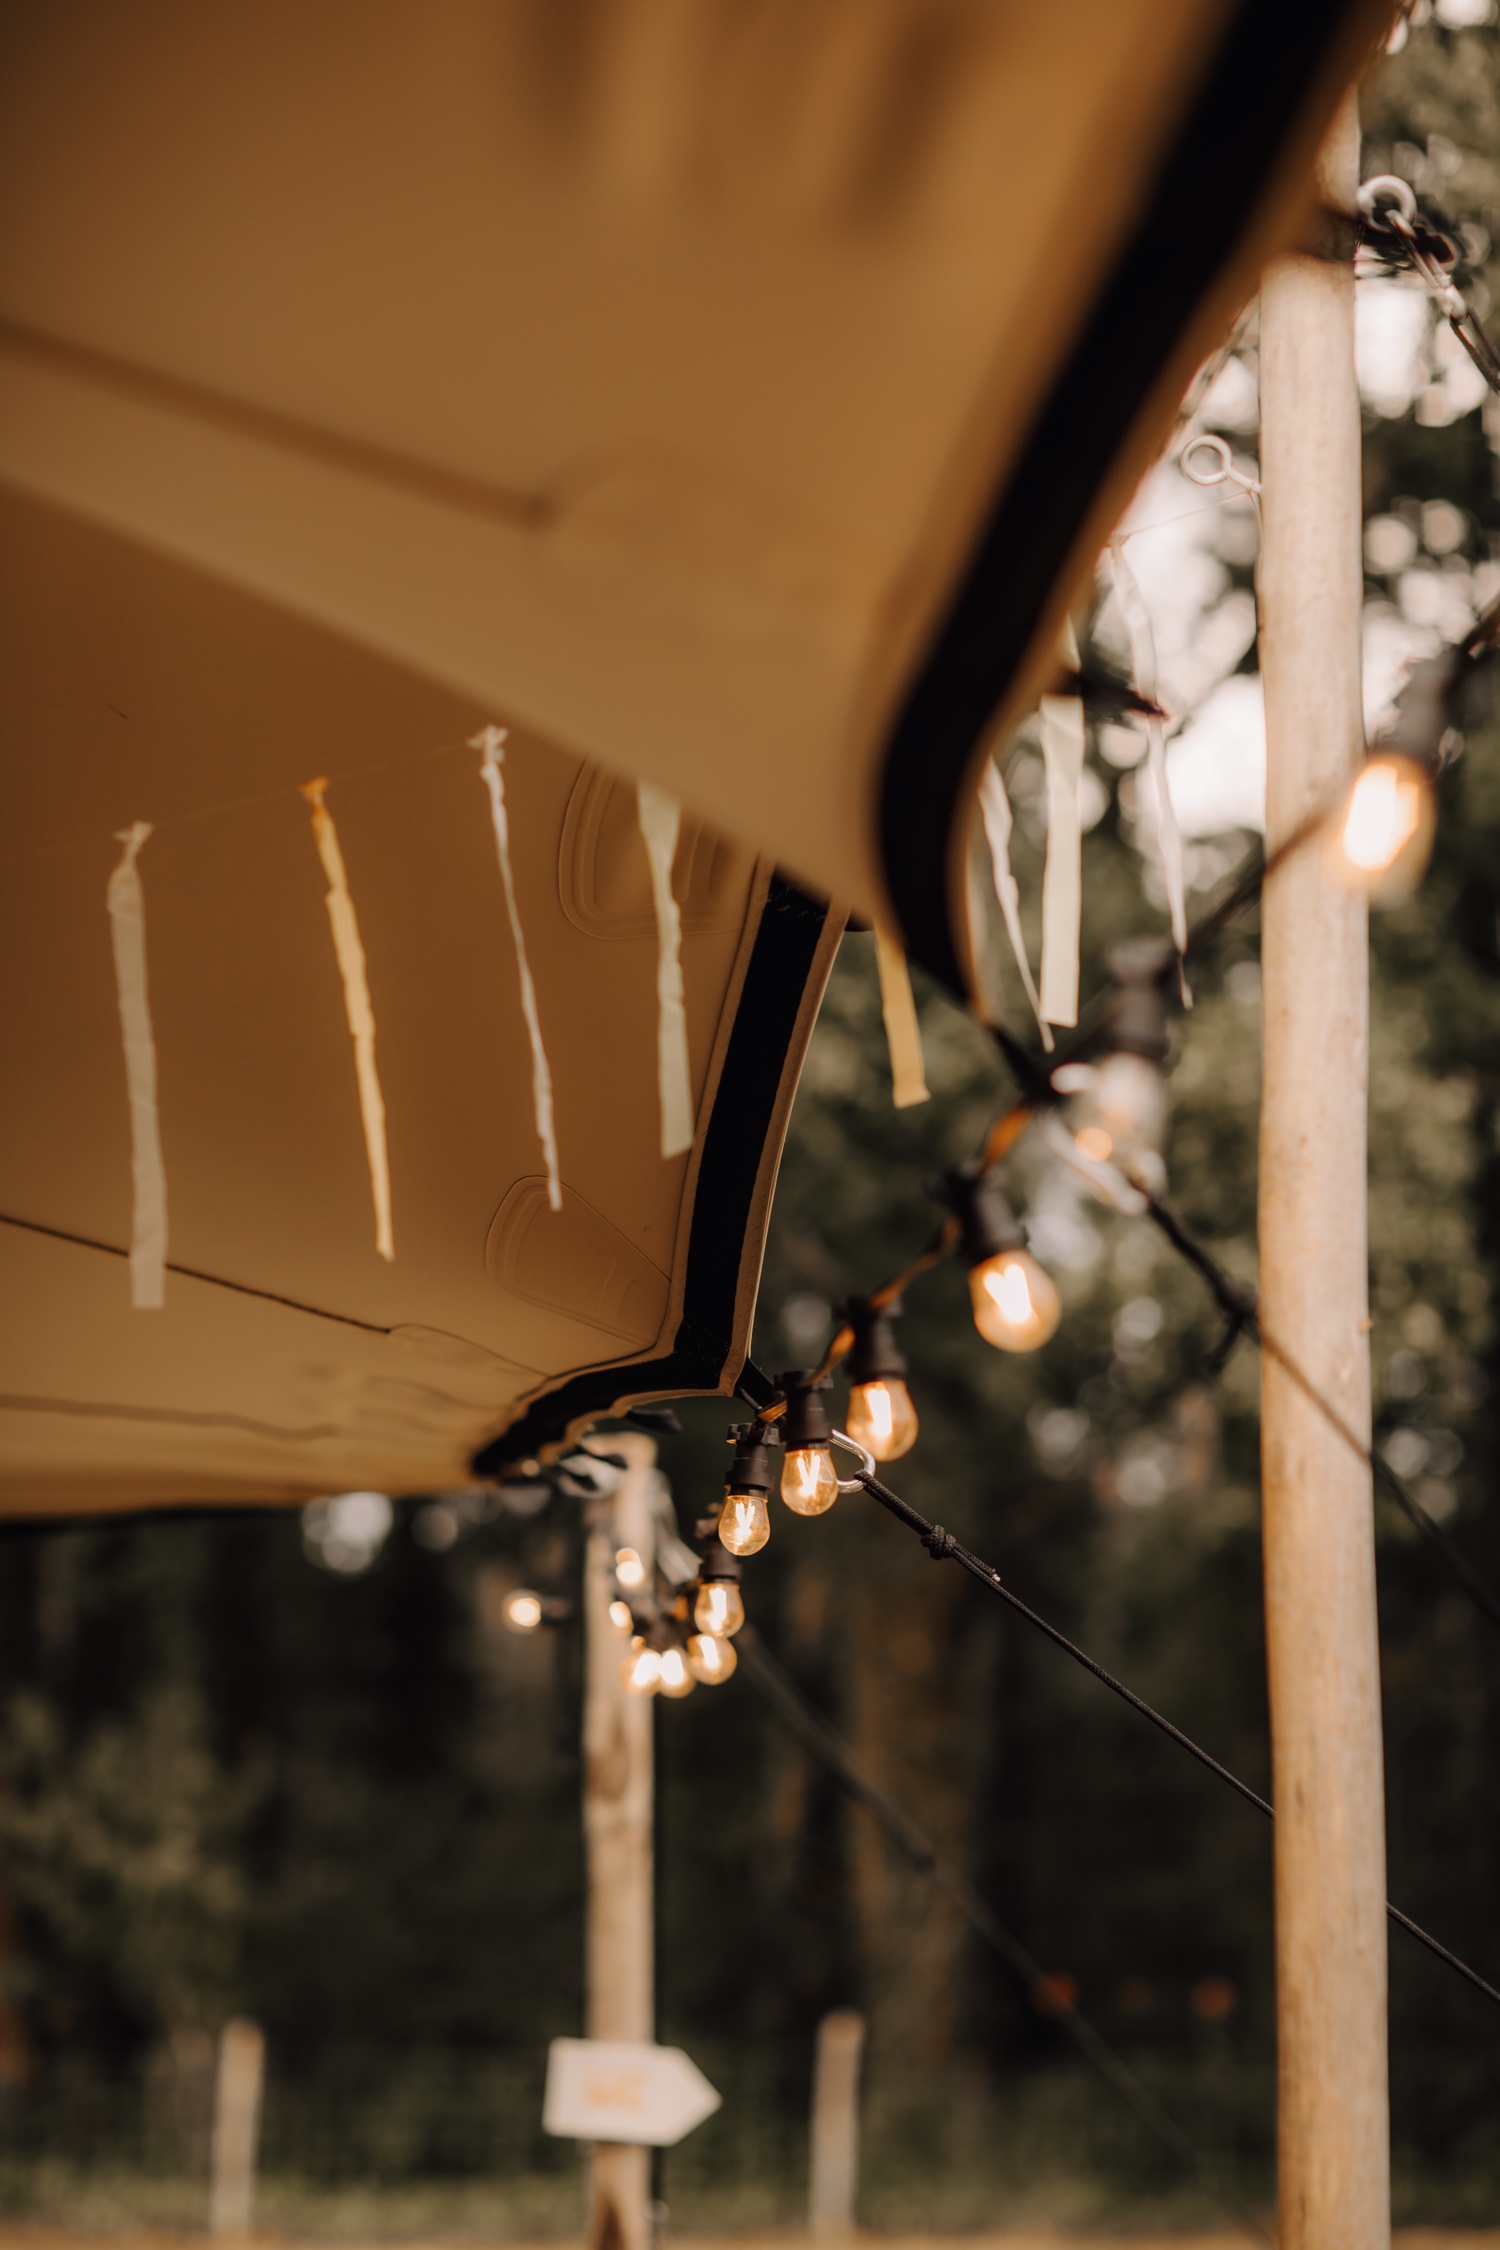 Huwelijksfotograaf Limburg - details van lampjes aan de tent